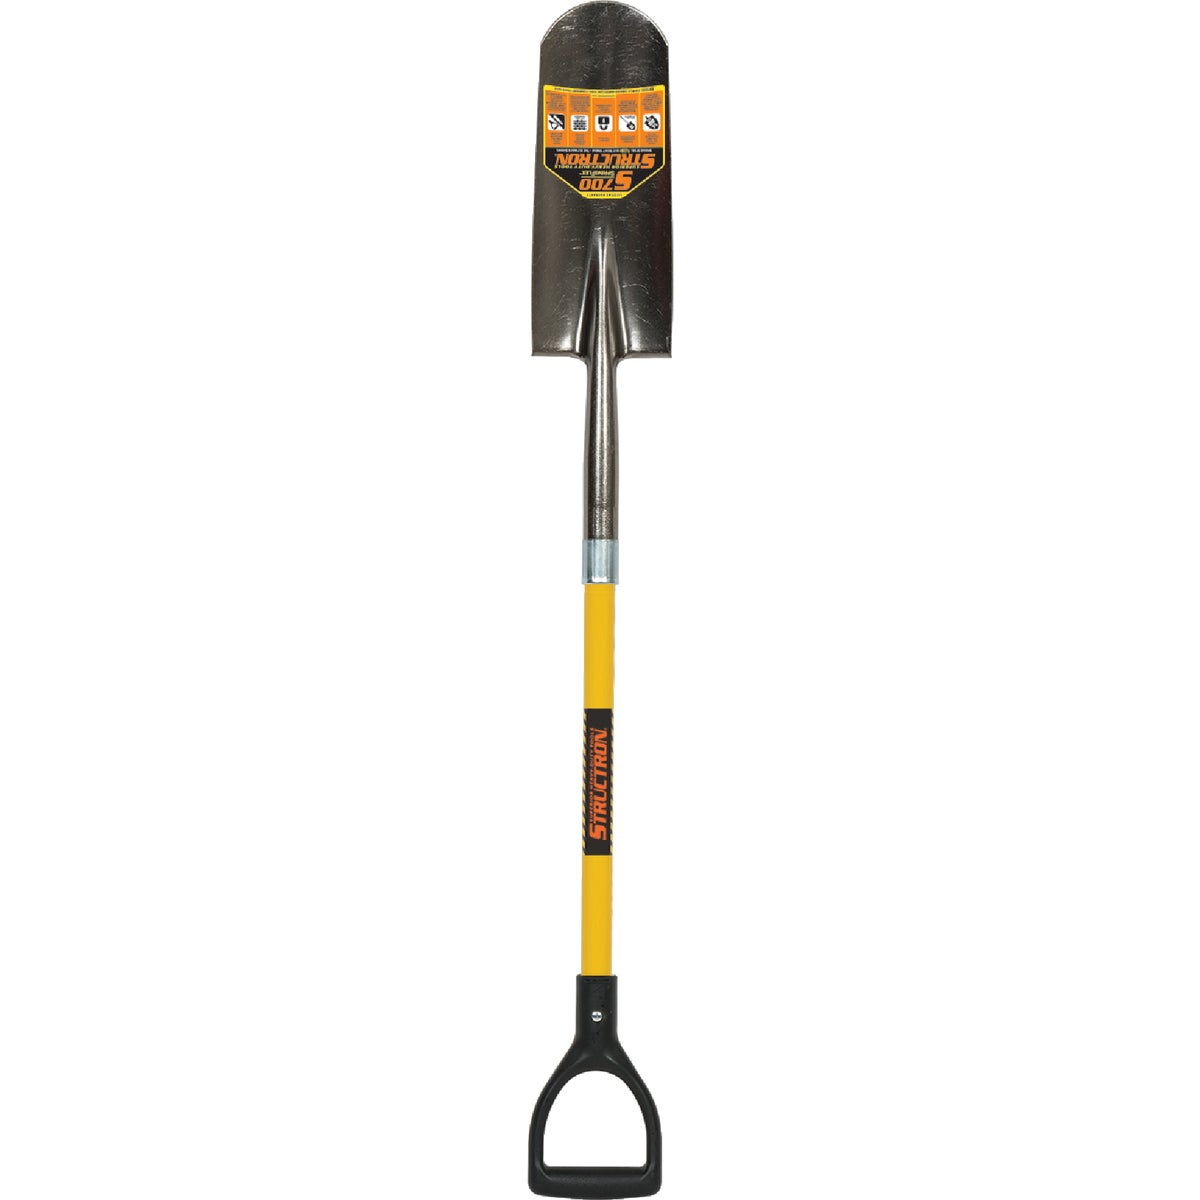 Item 767584, S700 SpringFlex 14-gauge fiberglass handle spade with heat-treated, high-